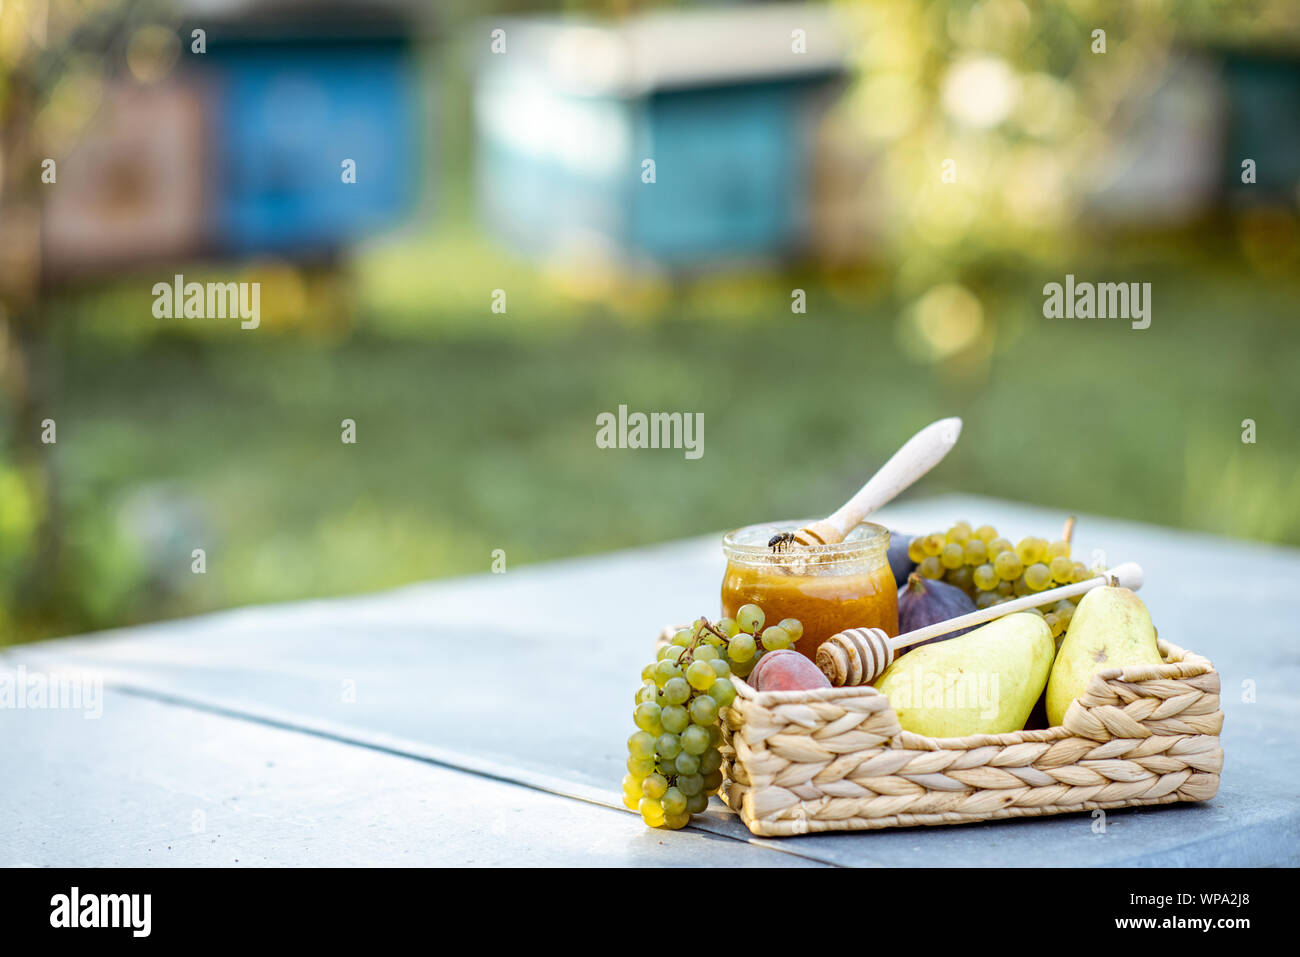 Composizione di frutti dolci e jar con del miele per alveare all'alveare, immagine con spazio di copia Foto Stock